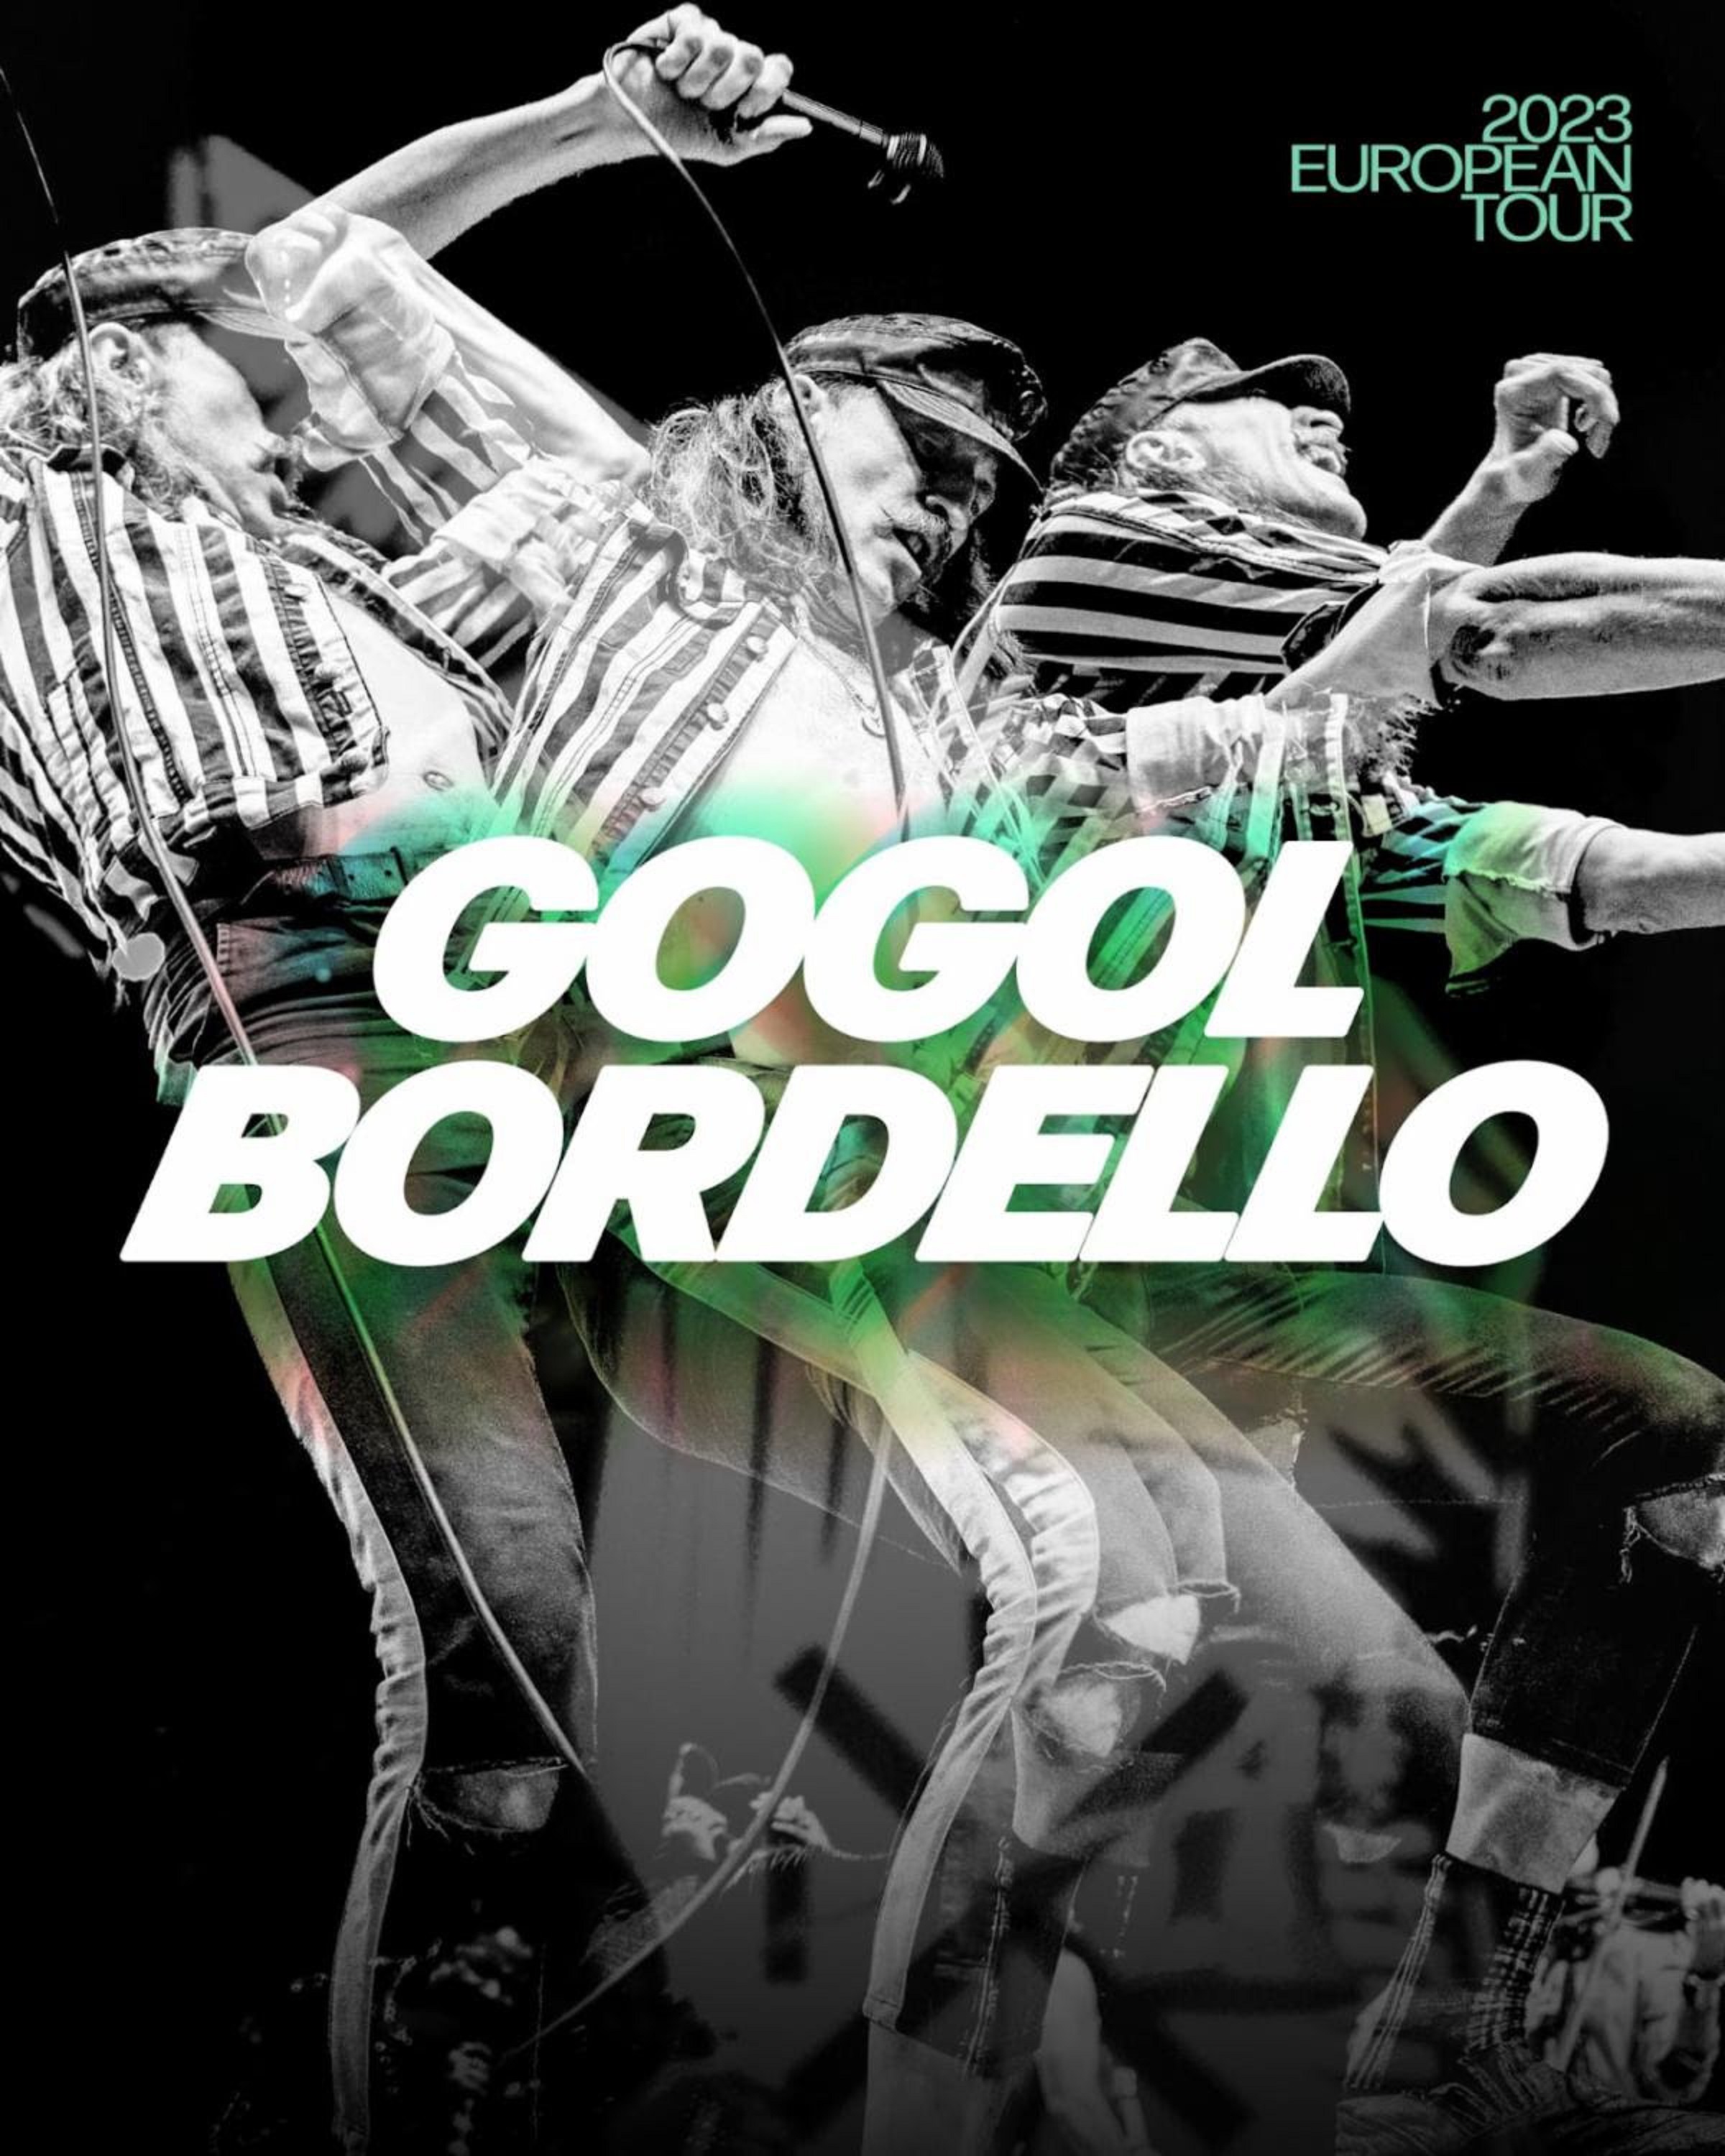 Gogol Bordello Announces European Tour Kicking Off May 25